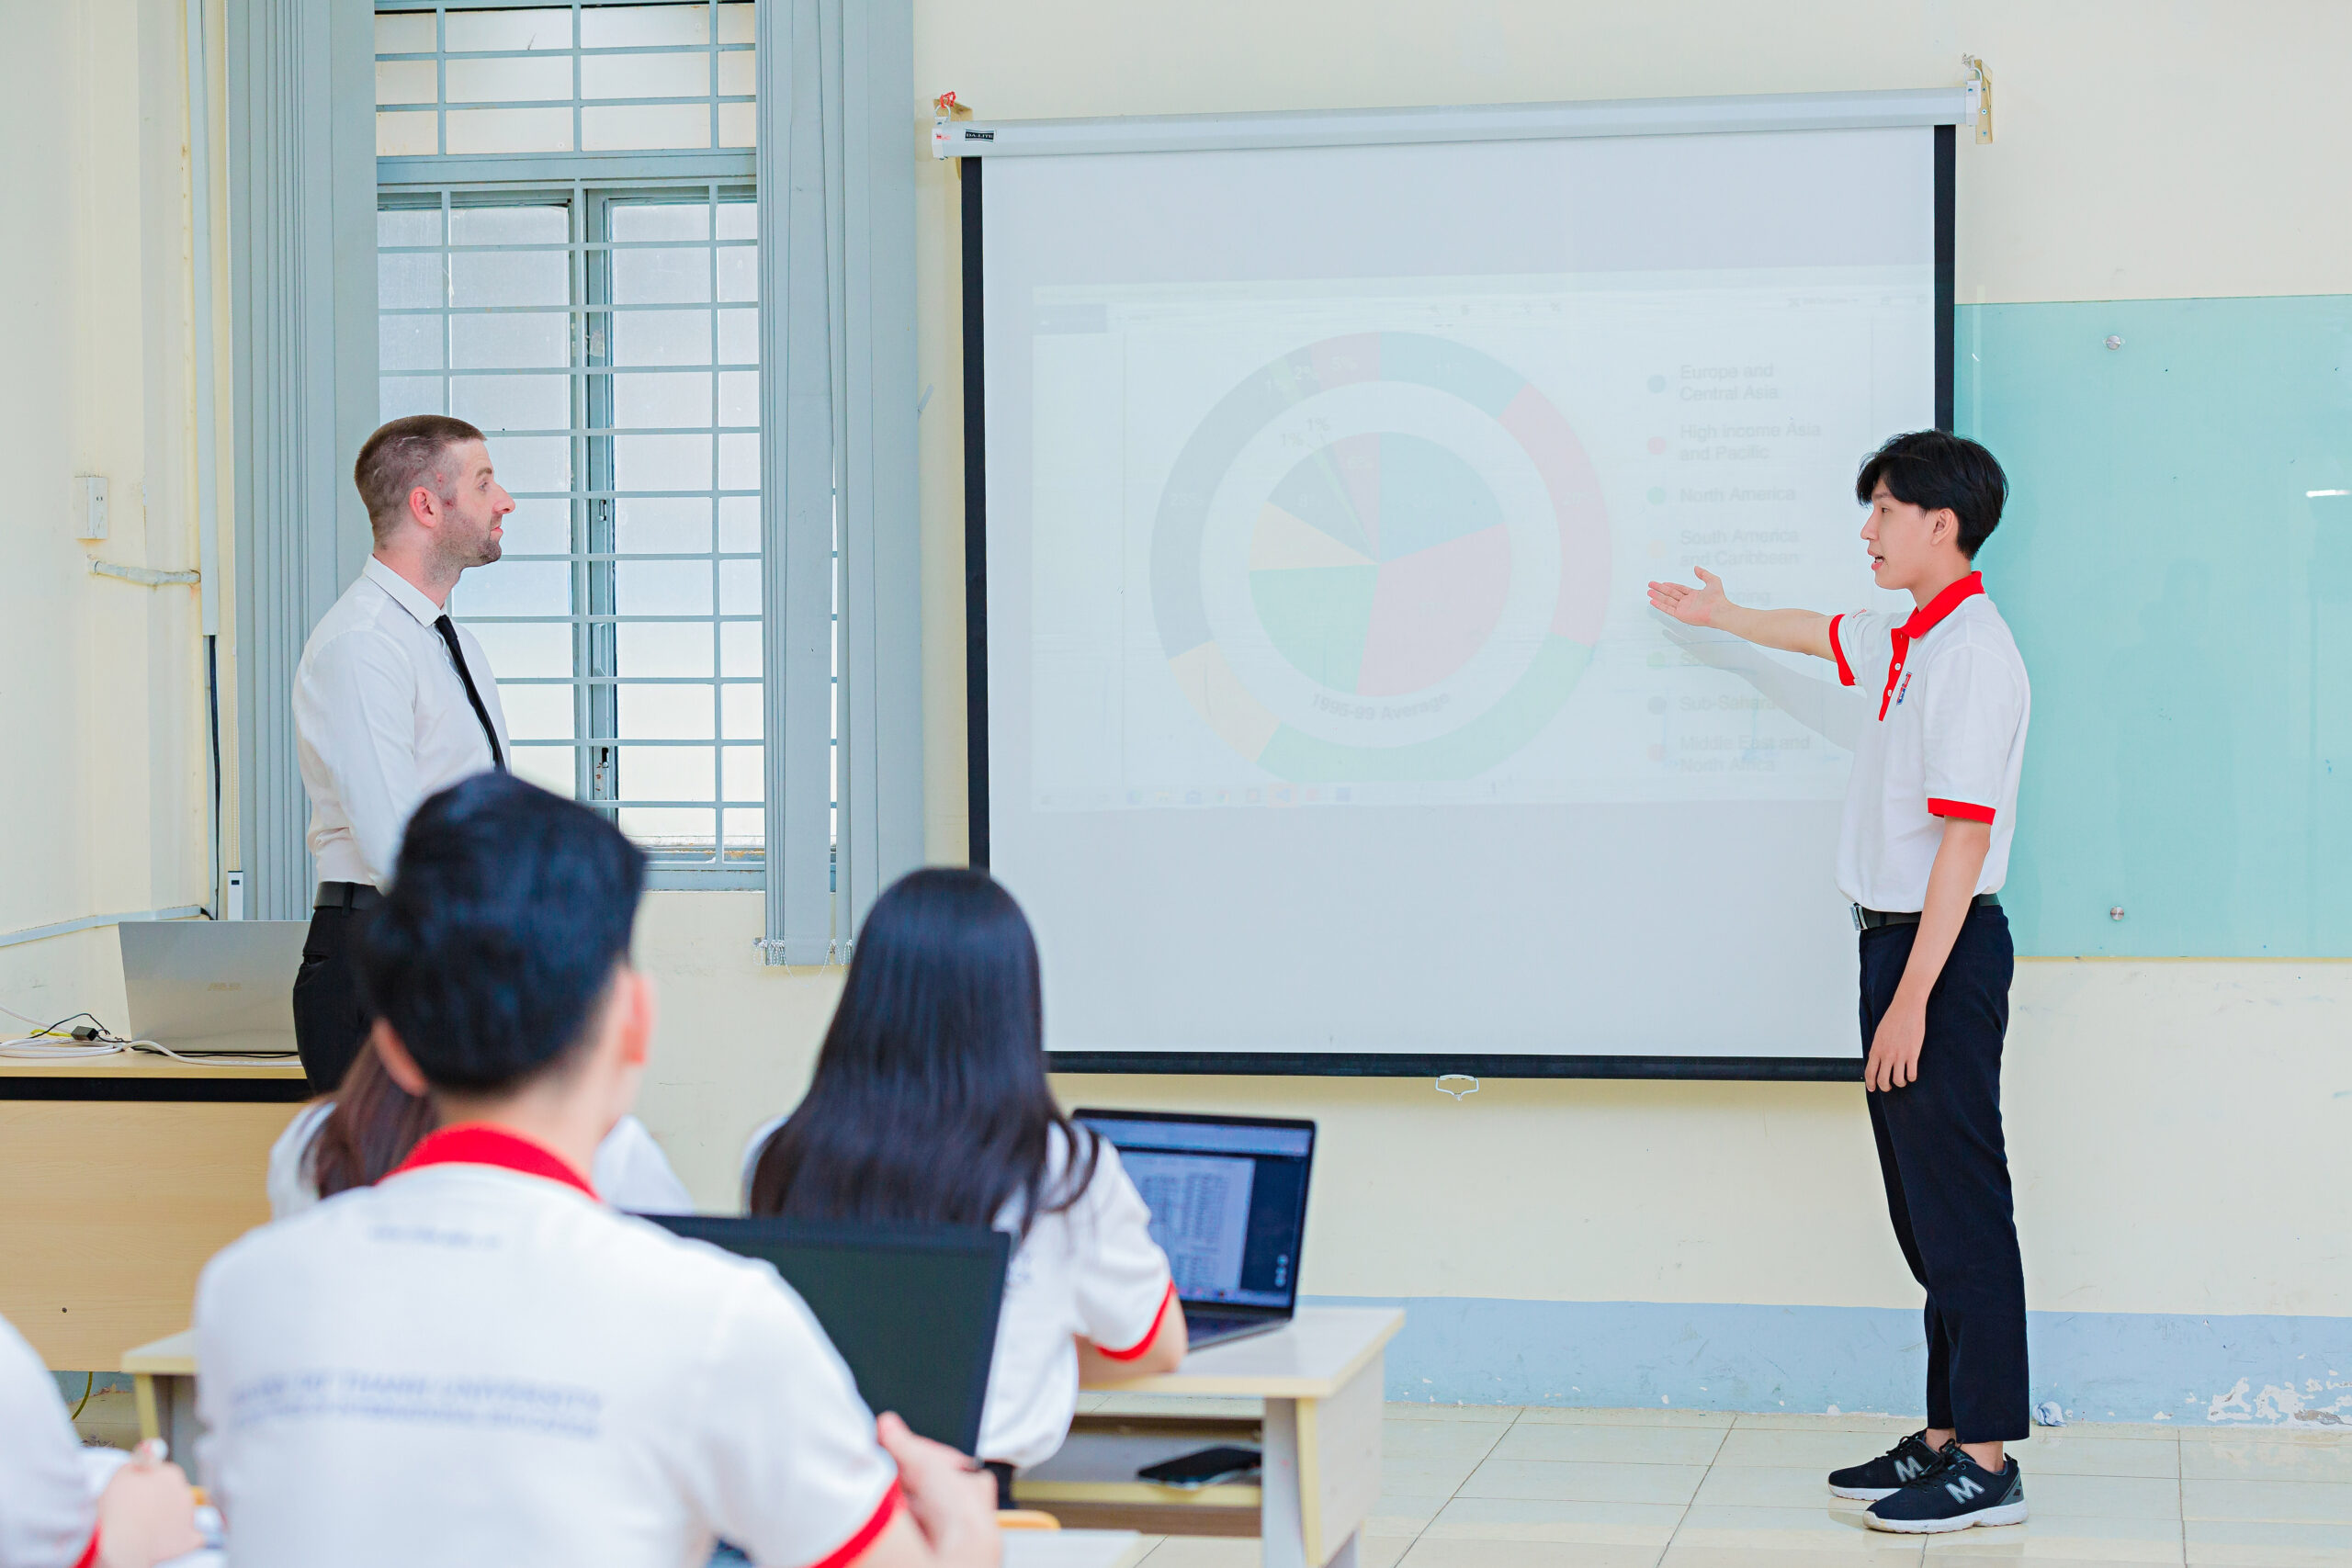 Sinh viên theo học ngành Quản trị kinh doanh được rèn luyện kỹ năng quản lý, tố chất lãnh đạo trong quá trình học